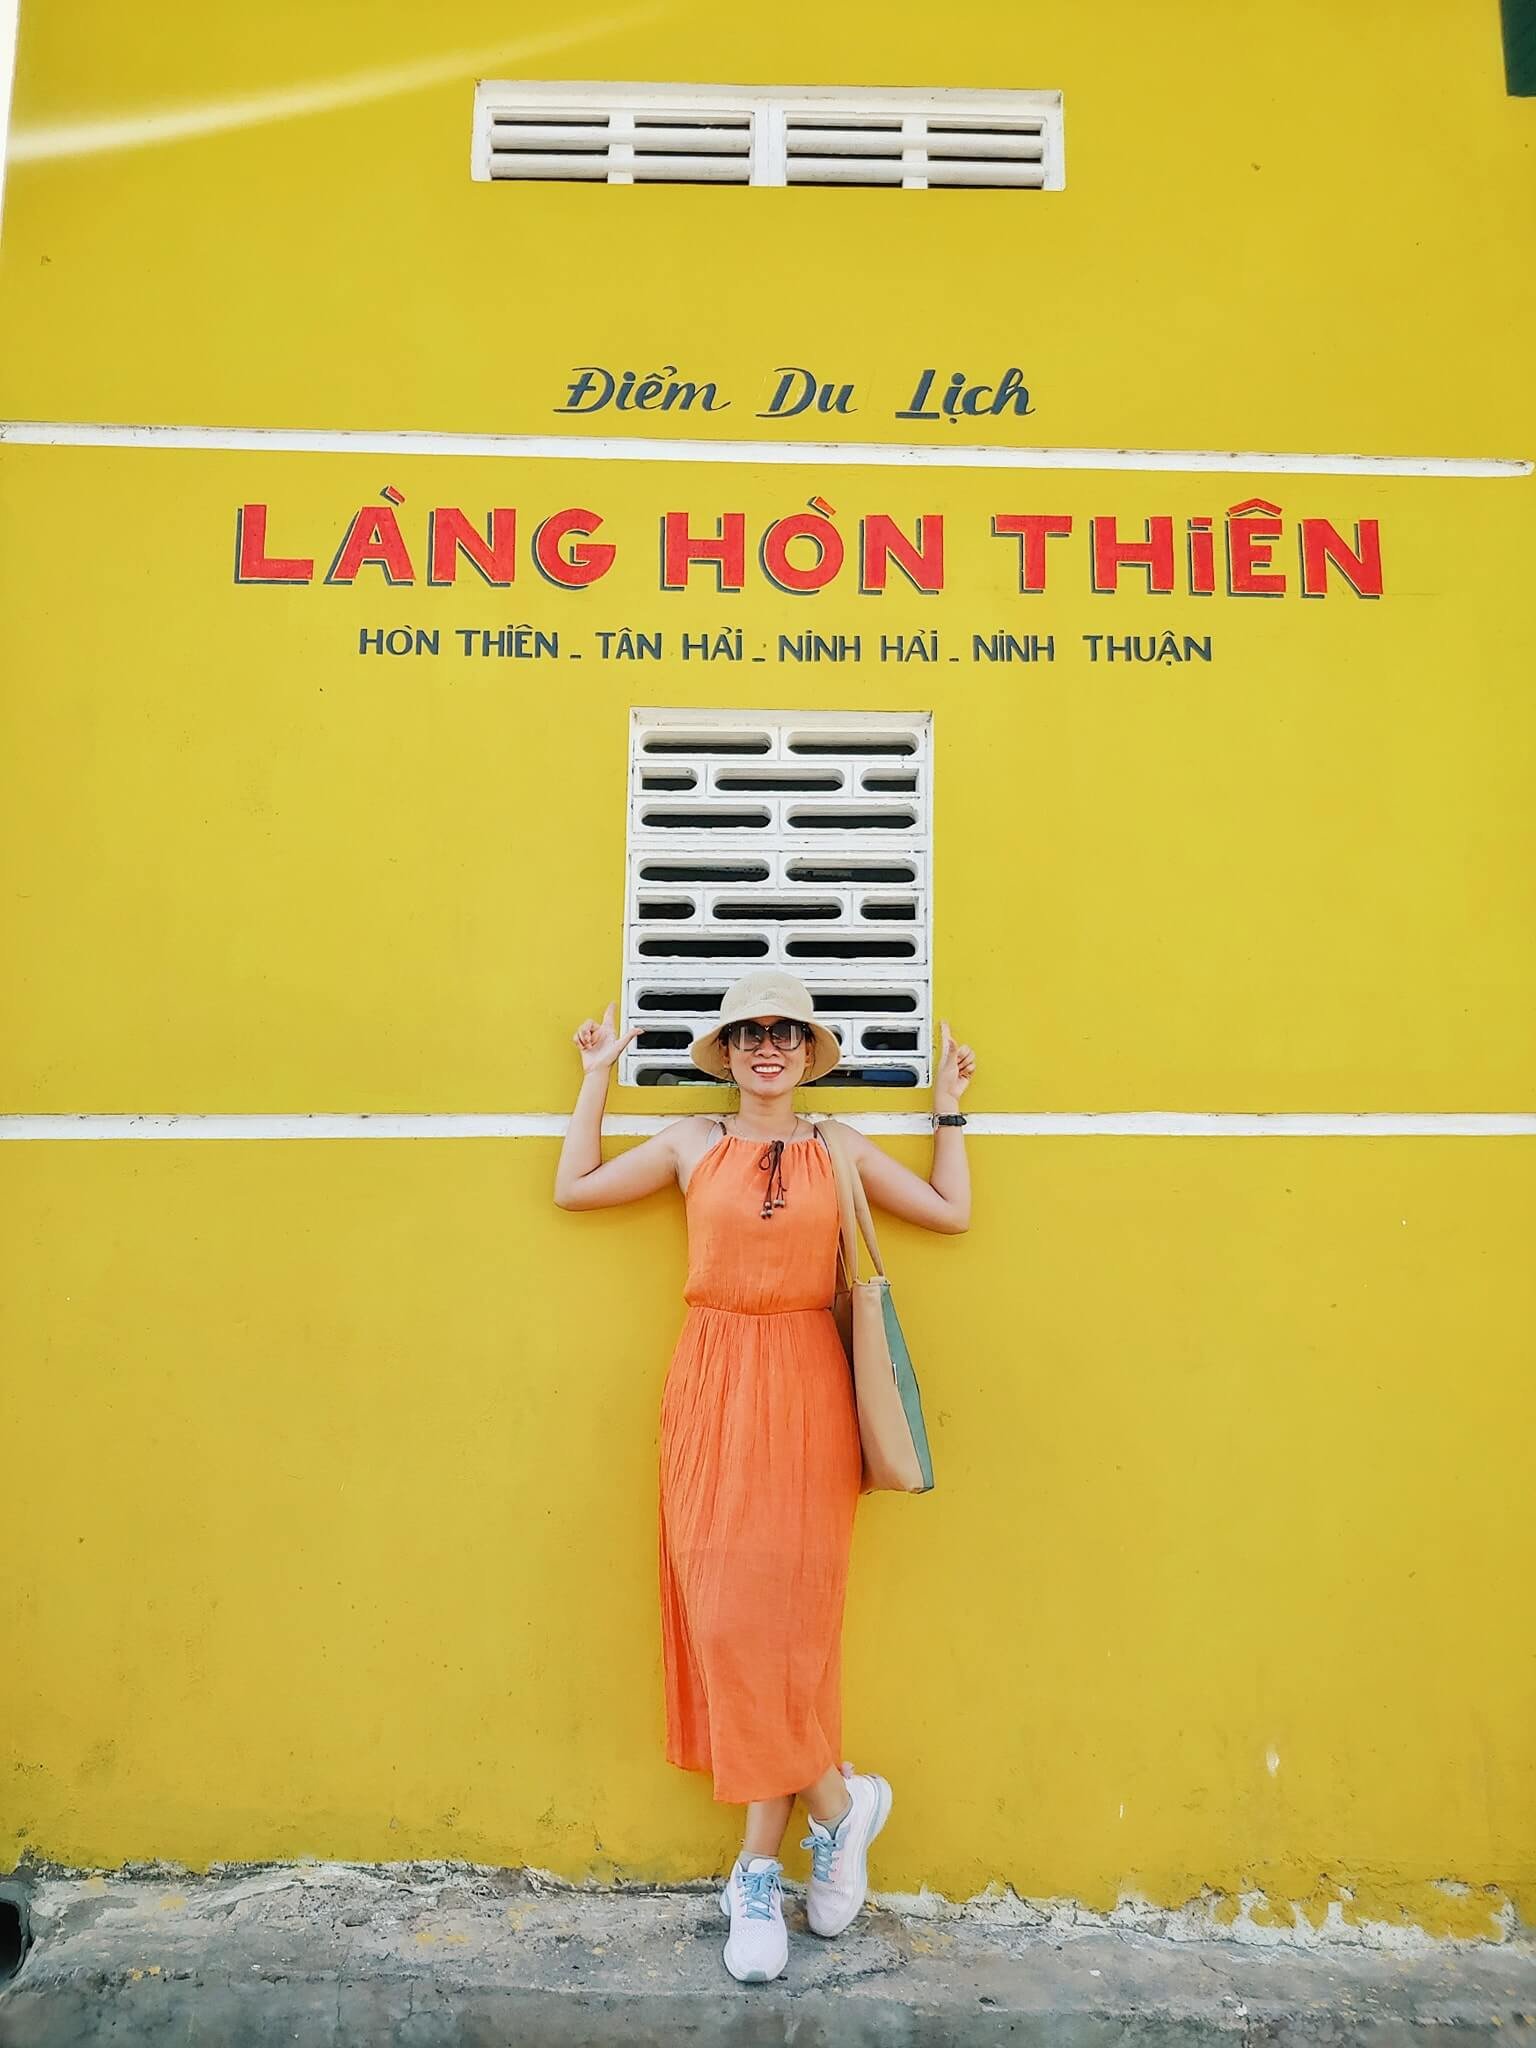 Chụp hình, sống ảo tại làng bích họa Hòn Thiên trong lịch trình du lịch Ninh Thuận 4 ngày từ Hà Nội. Ảnh: Vy Nguyễn